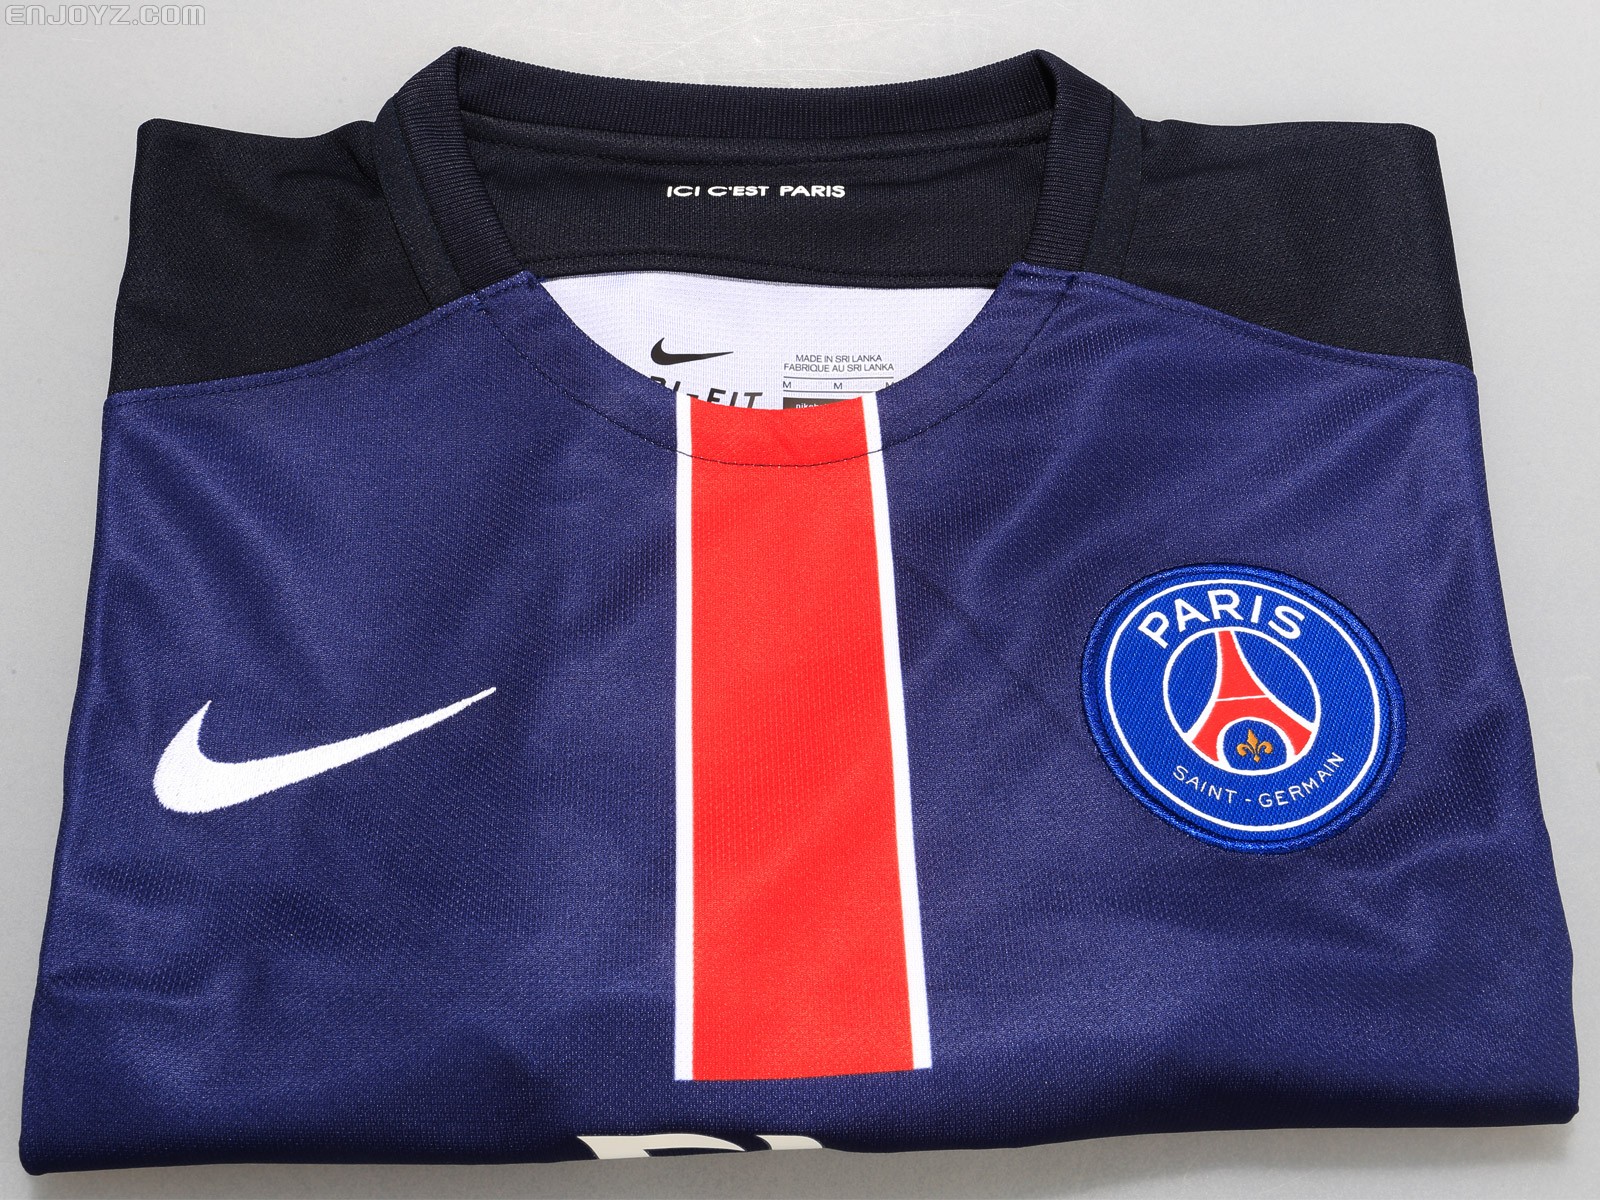 2019/20 赛季巴黎圣日耳曼主场 (Mbappé) 男子足球球迷服-耐克(Nike)中国官网